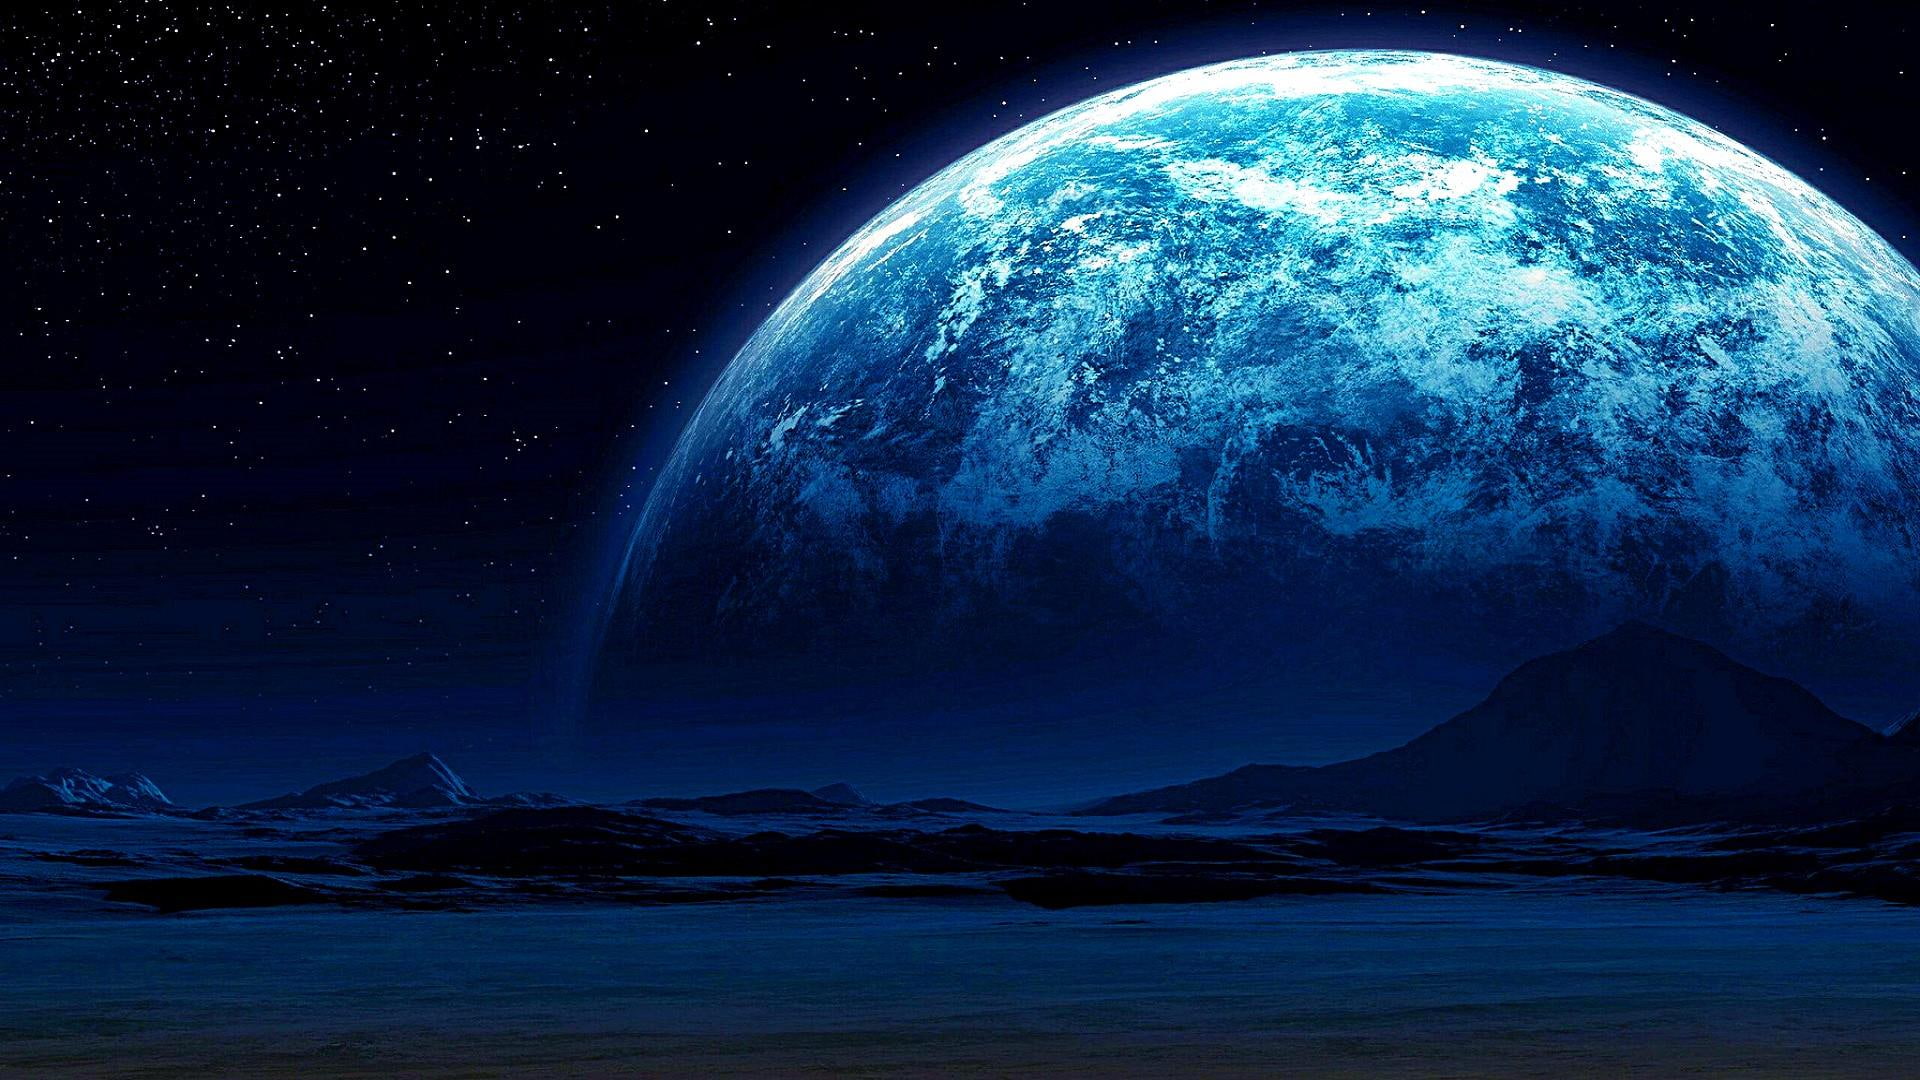 blue moon, stars, mountain, starry night, earthlike, sky, planet